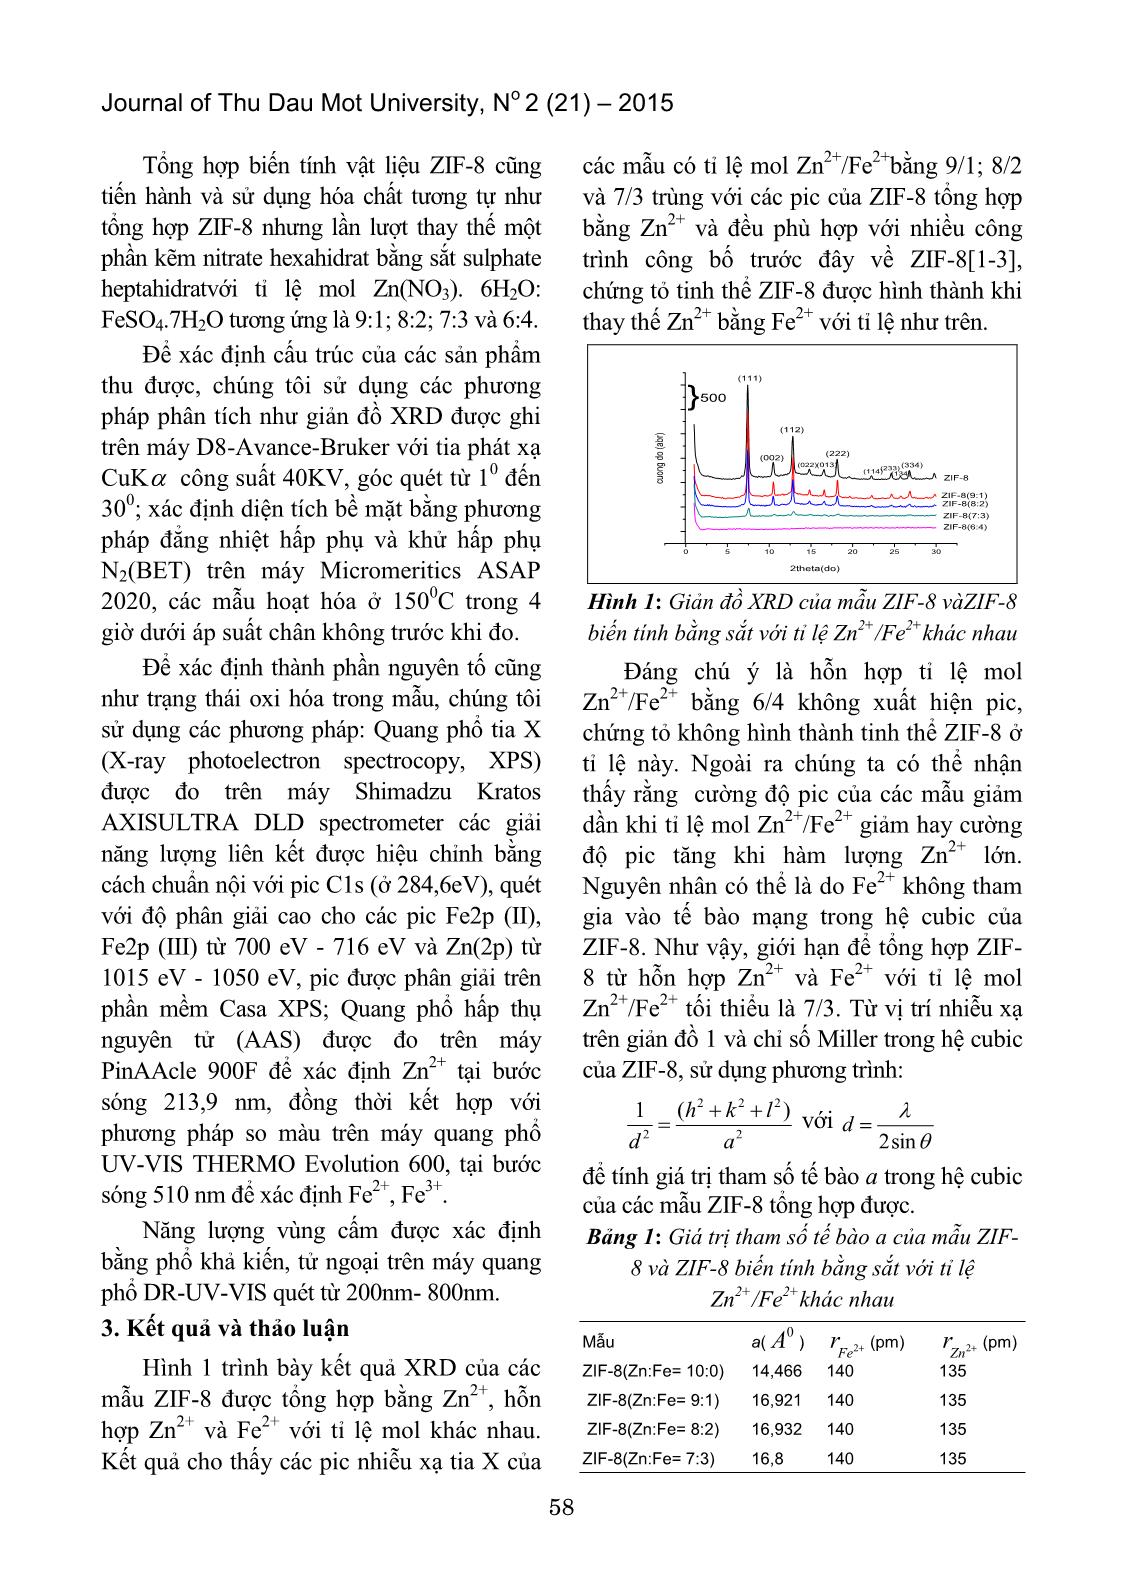 Nghiên cứu tổng hợp vật liệu ZIF-8 (Zn, Fe) trang 2